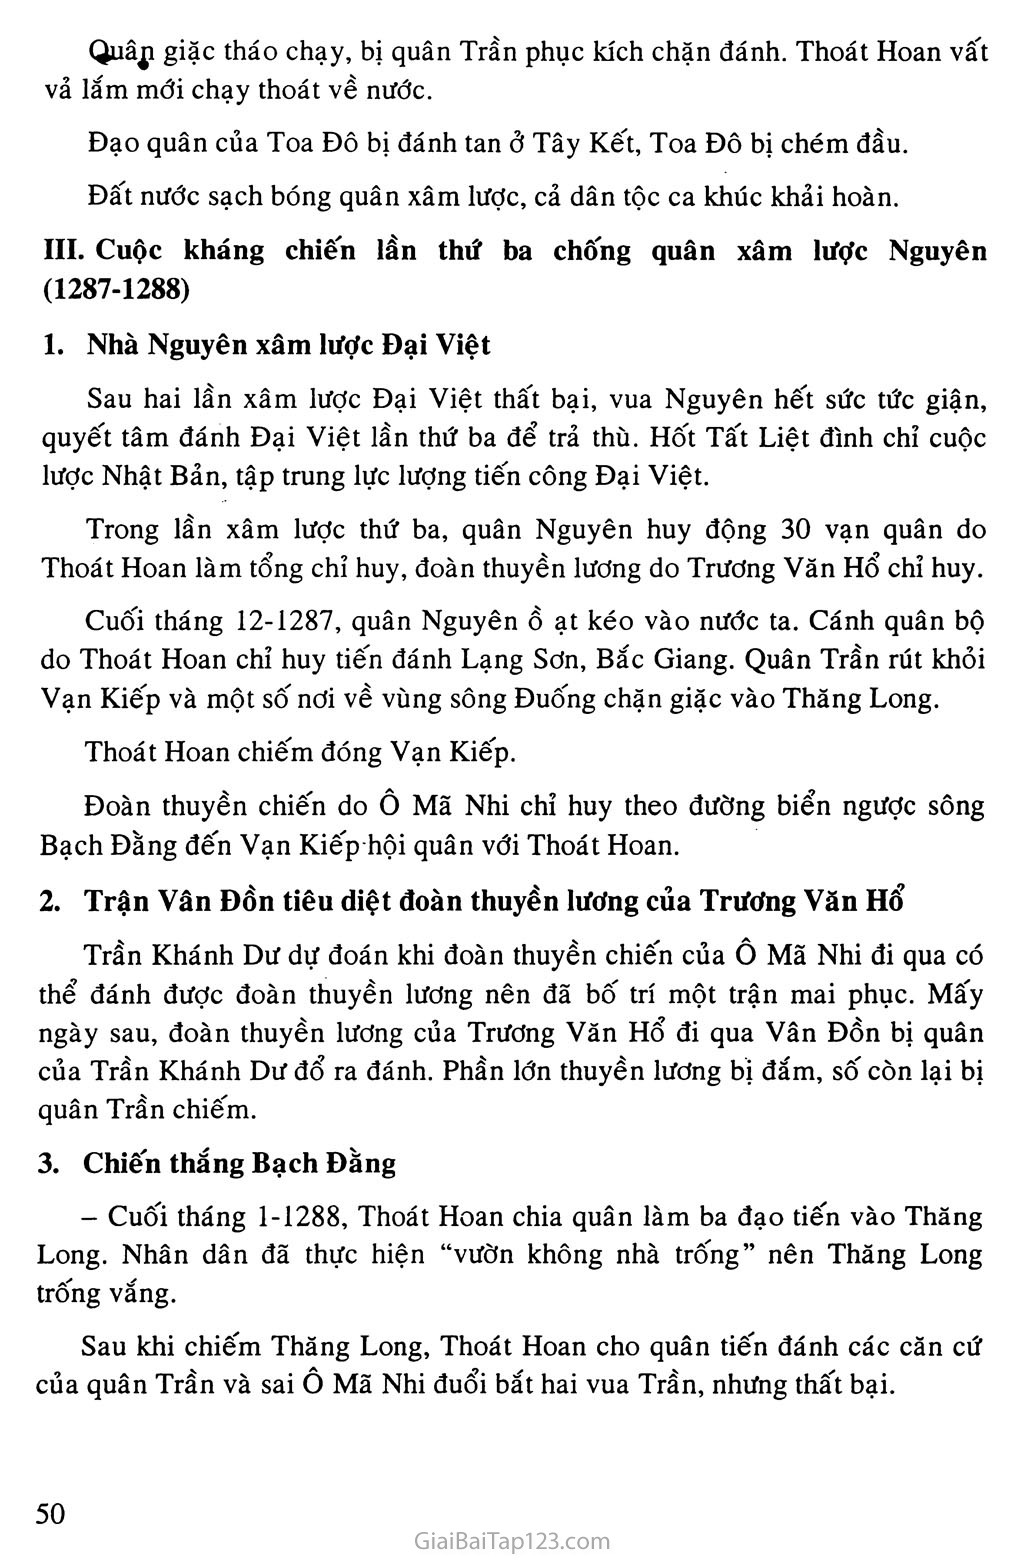 Bài 14: Ba lần kháng chiến chống quân xâm lược Mông - Nguyên (thế kỉ XIII) trang 4